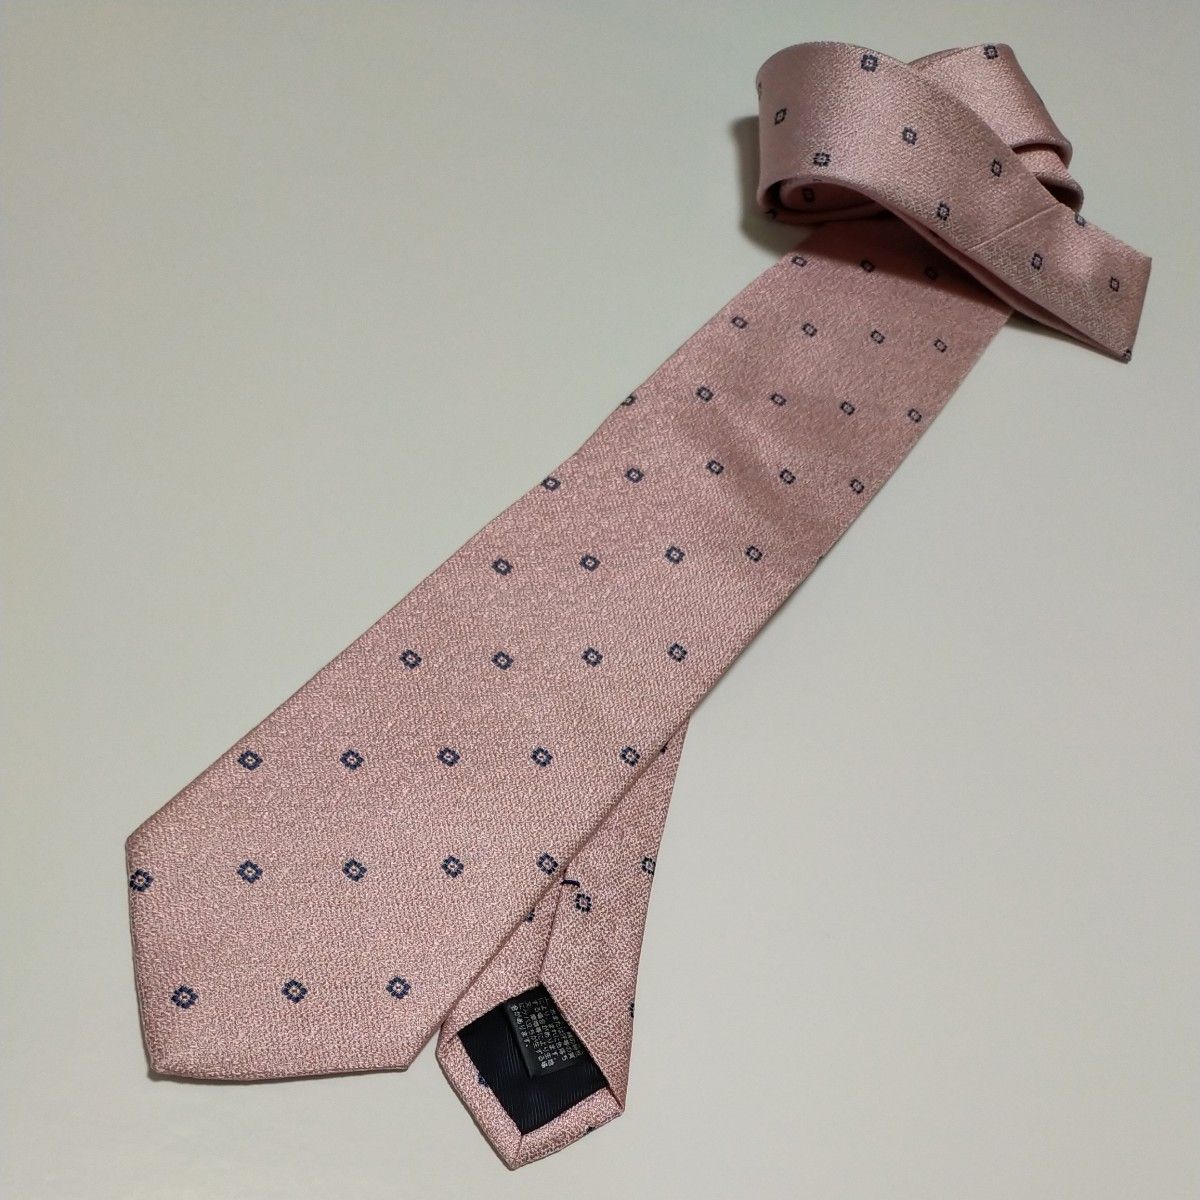  新品ブランドネクタイ 超お買い得品！高品質ネクタイ 日本製 シルク100% 超特価！タグ付き  さくら色